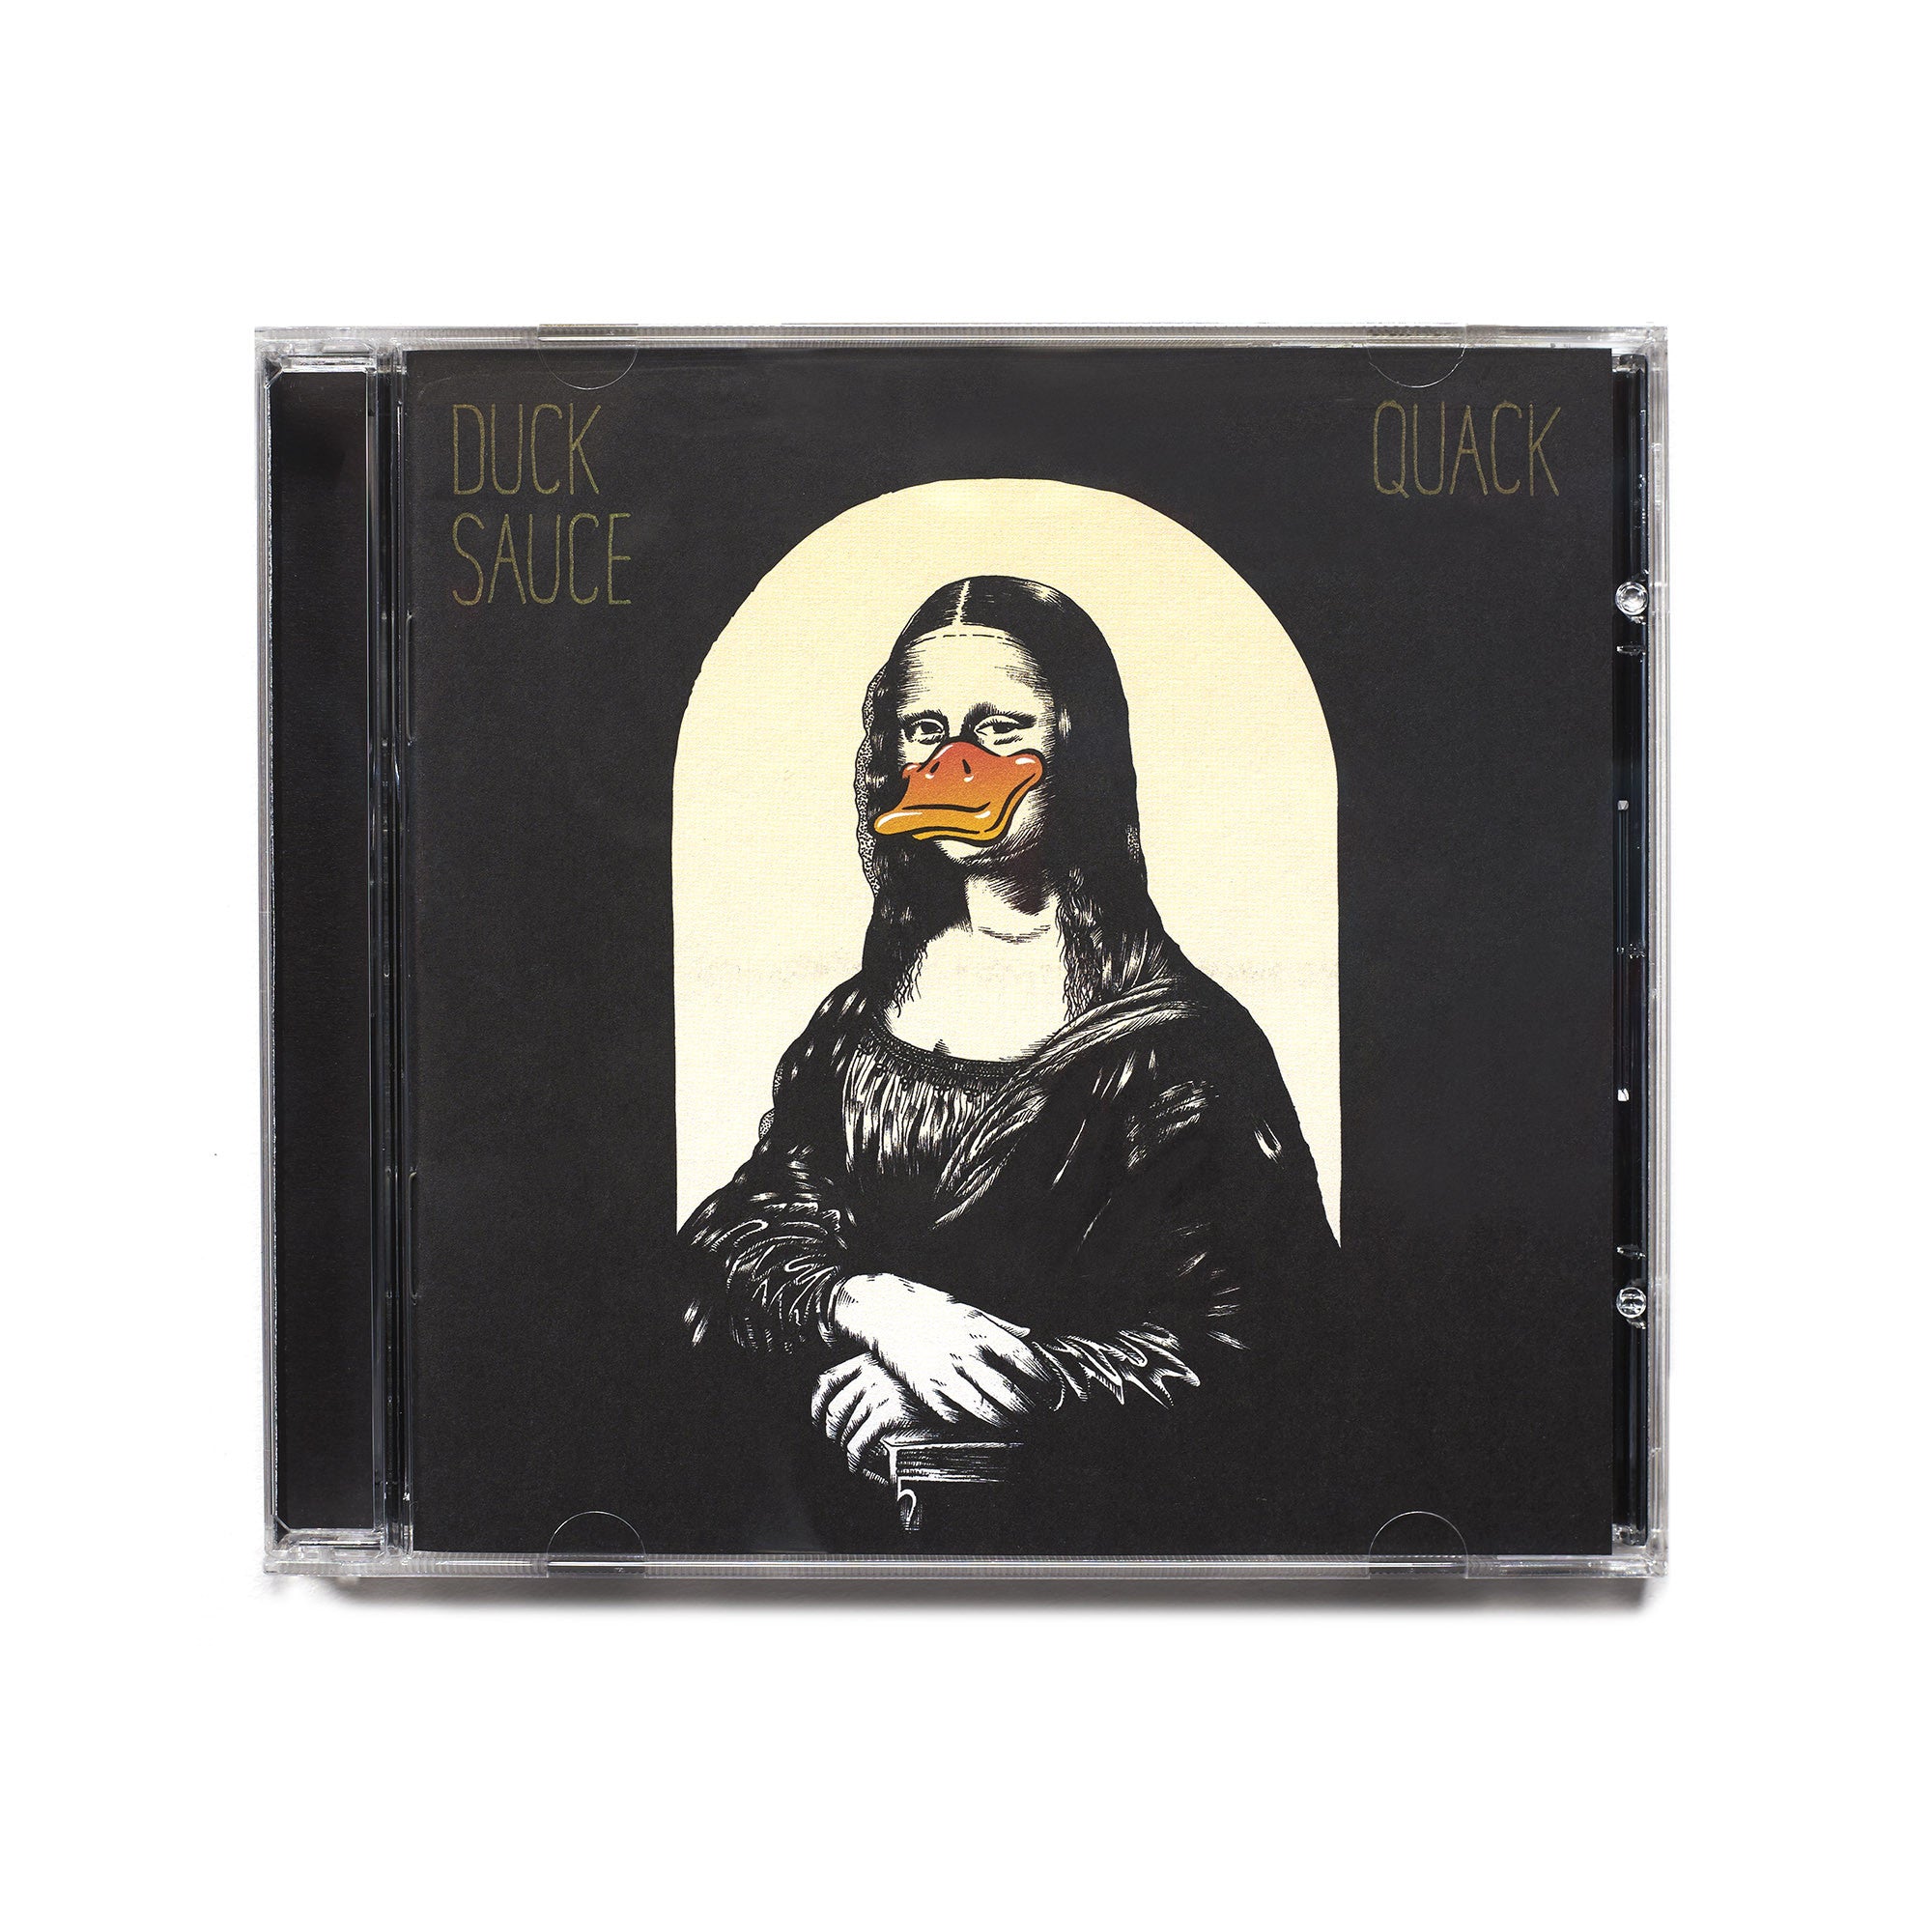 Duck Sauce “Quack” CD